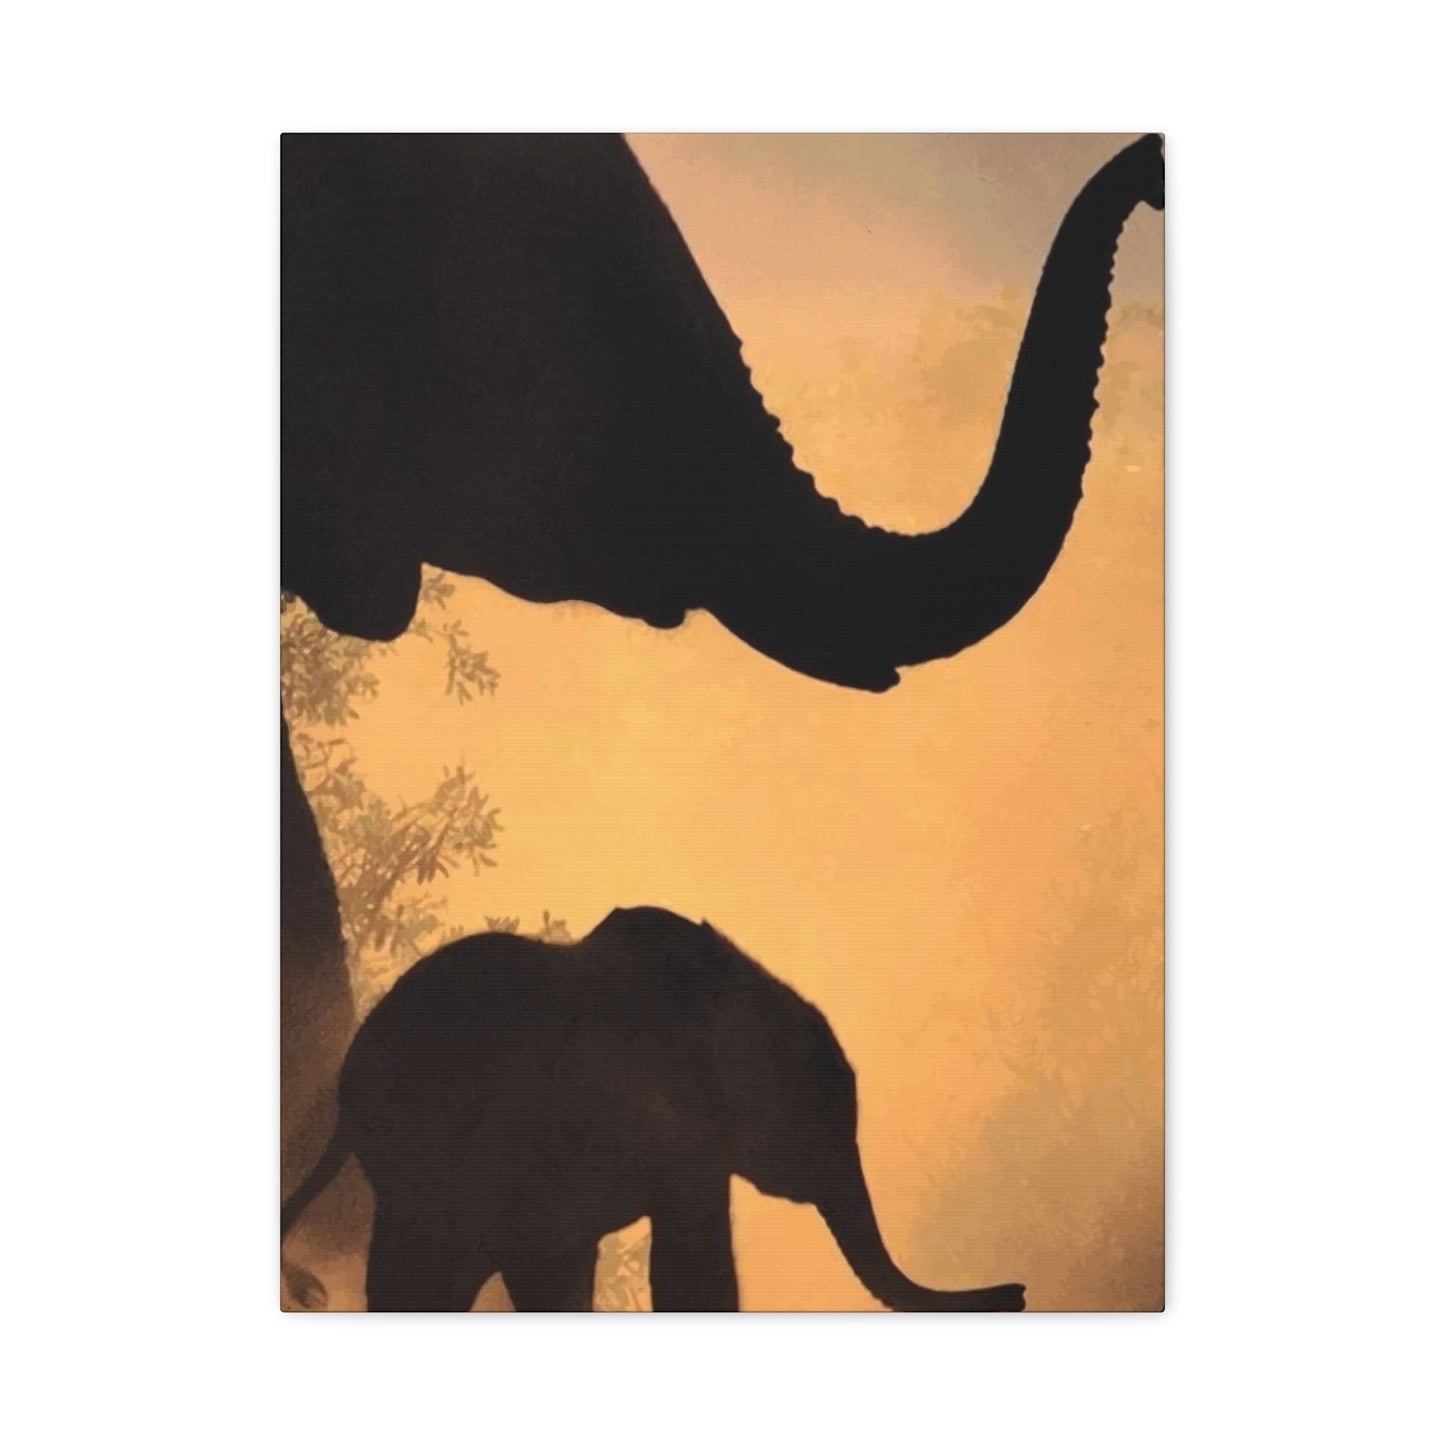 Elephants Wall Art & Canvas Prints